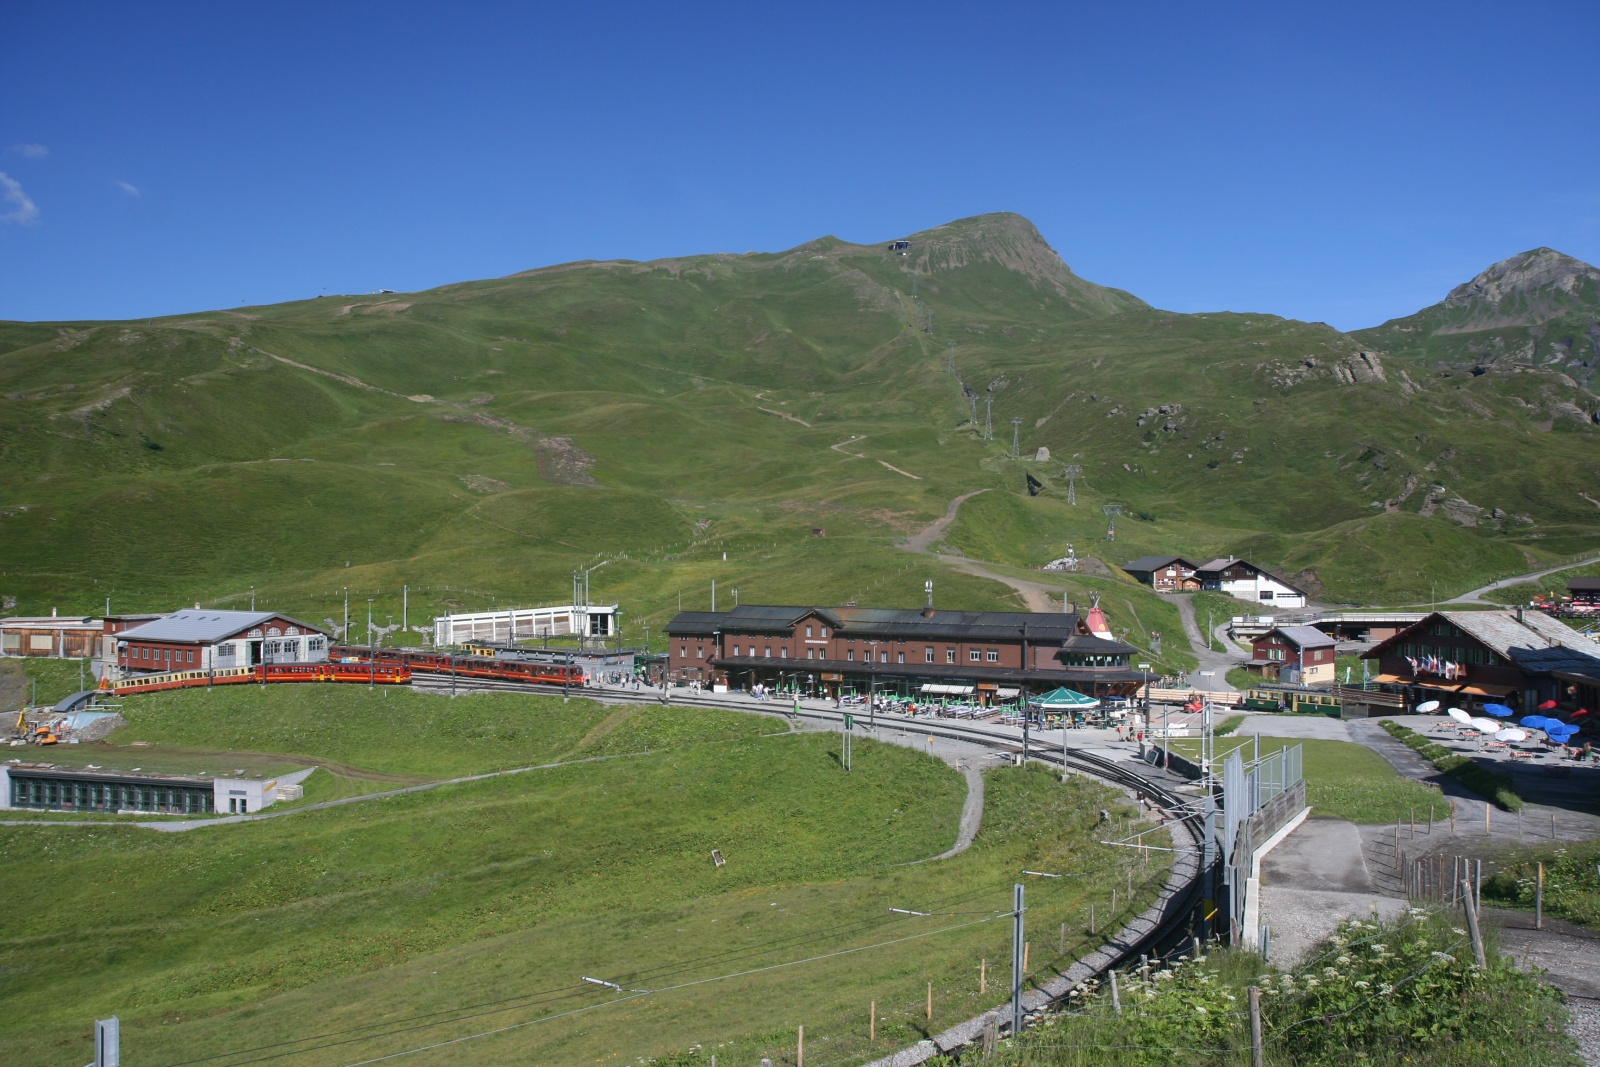 Jungfraù - Jungfraujoch la stazione ferroviaria più alta d'Europa 3454 m.